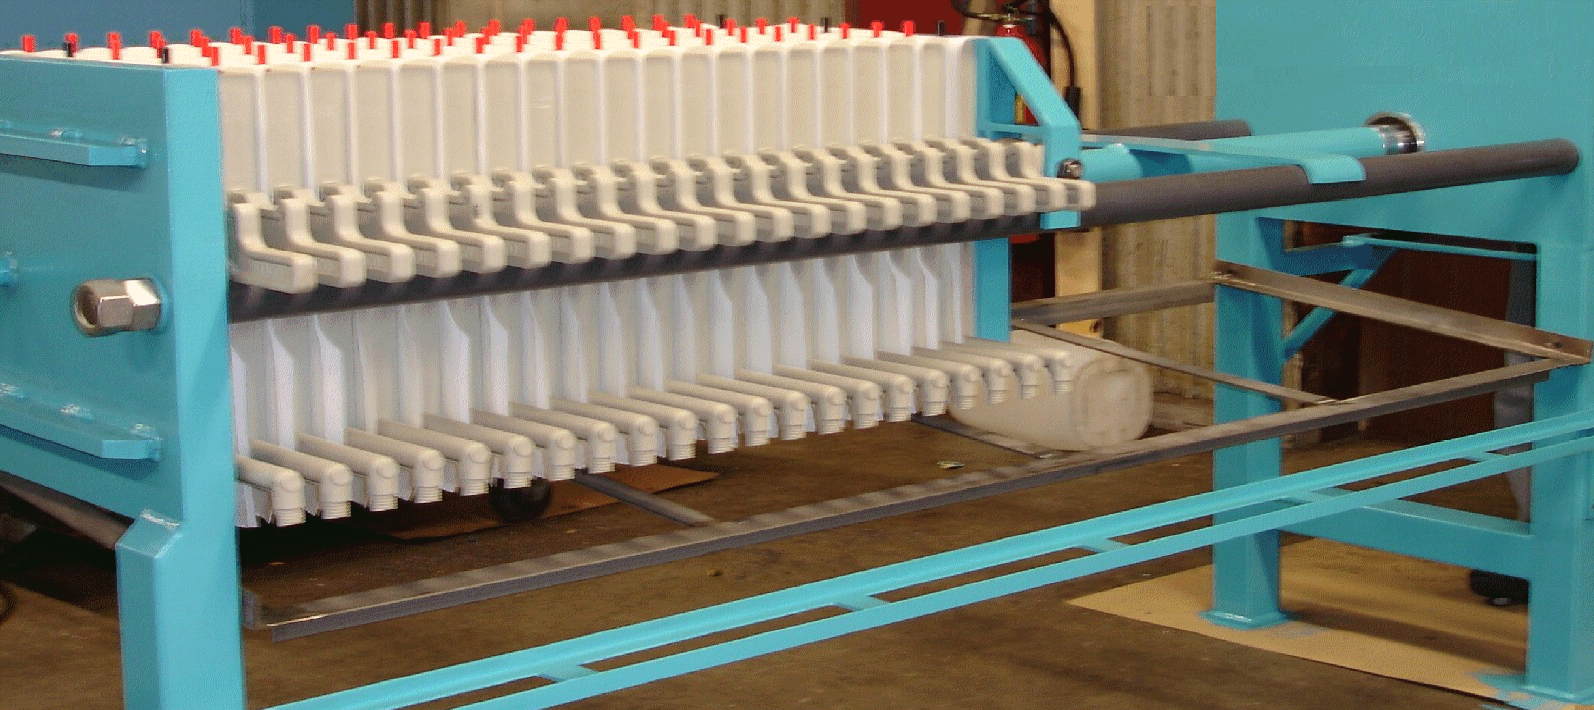 Filtering press pumps